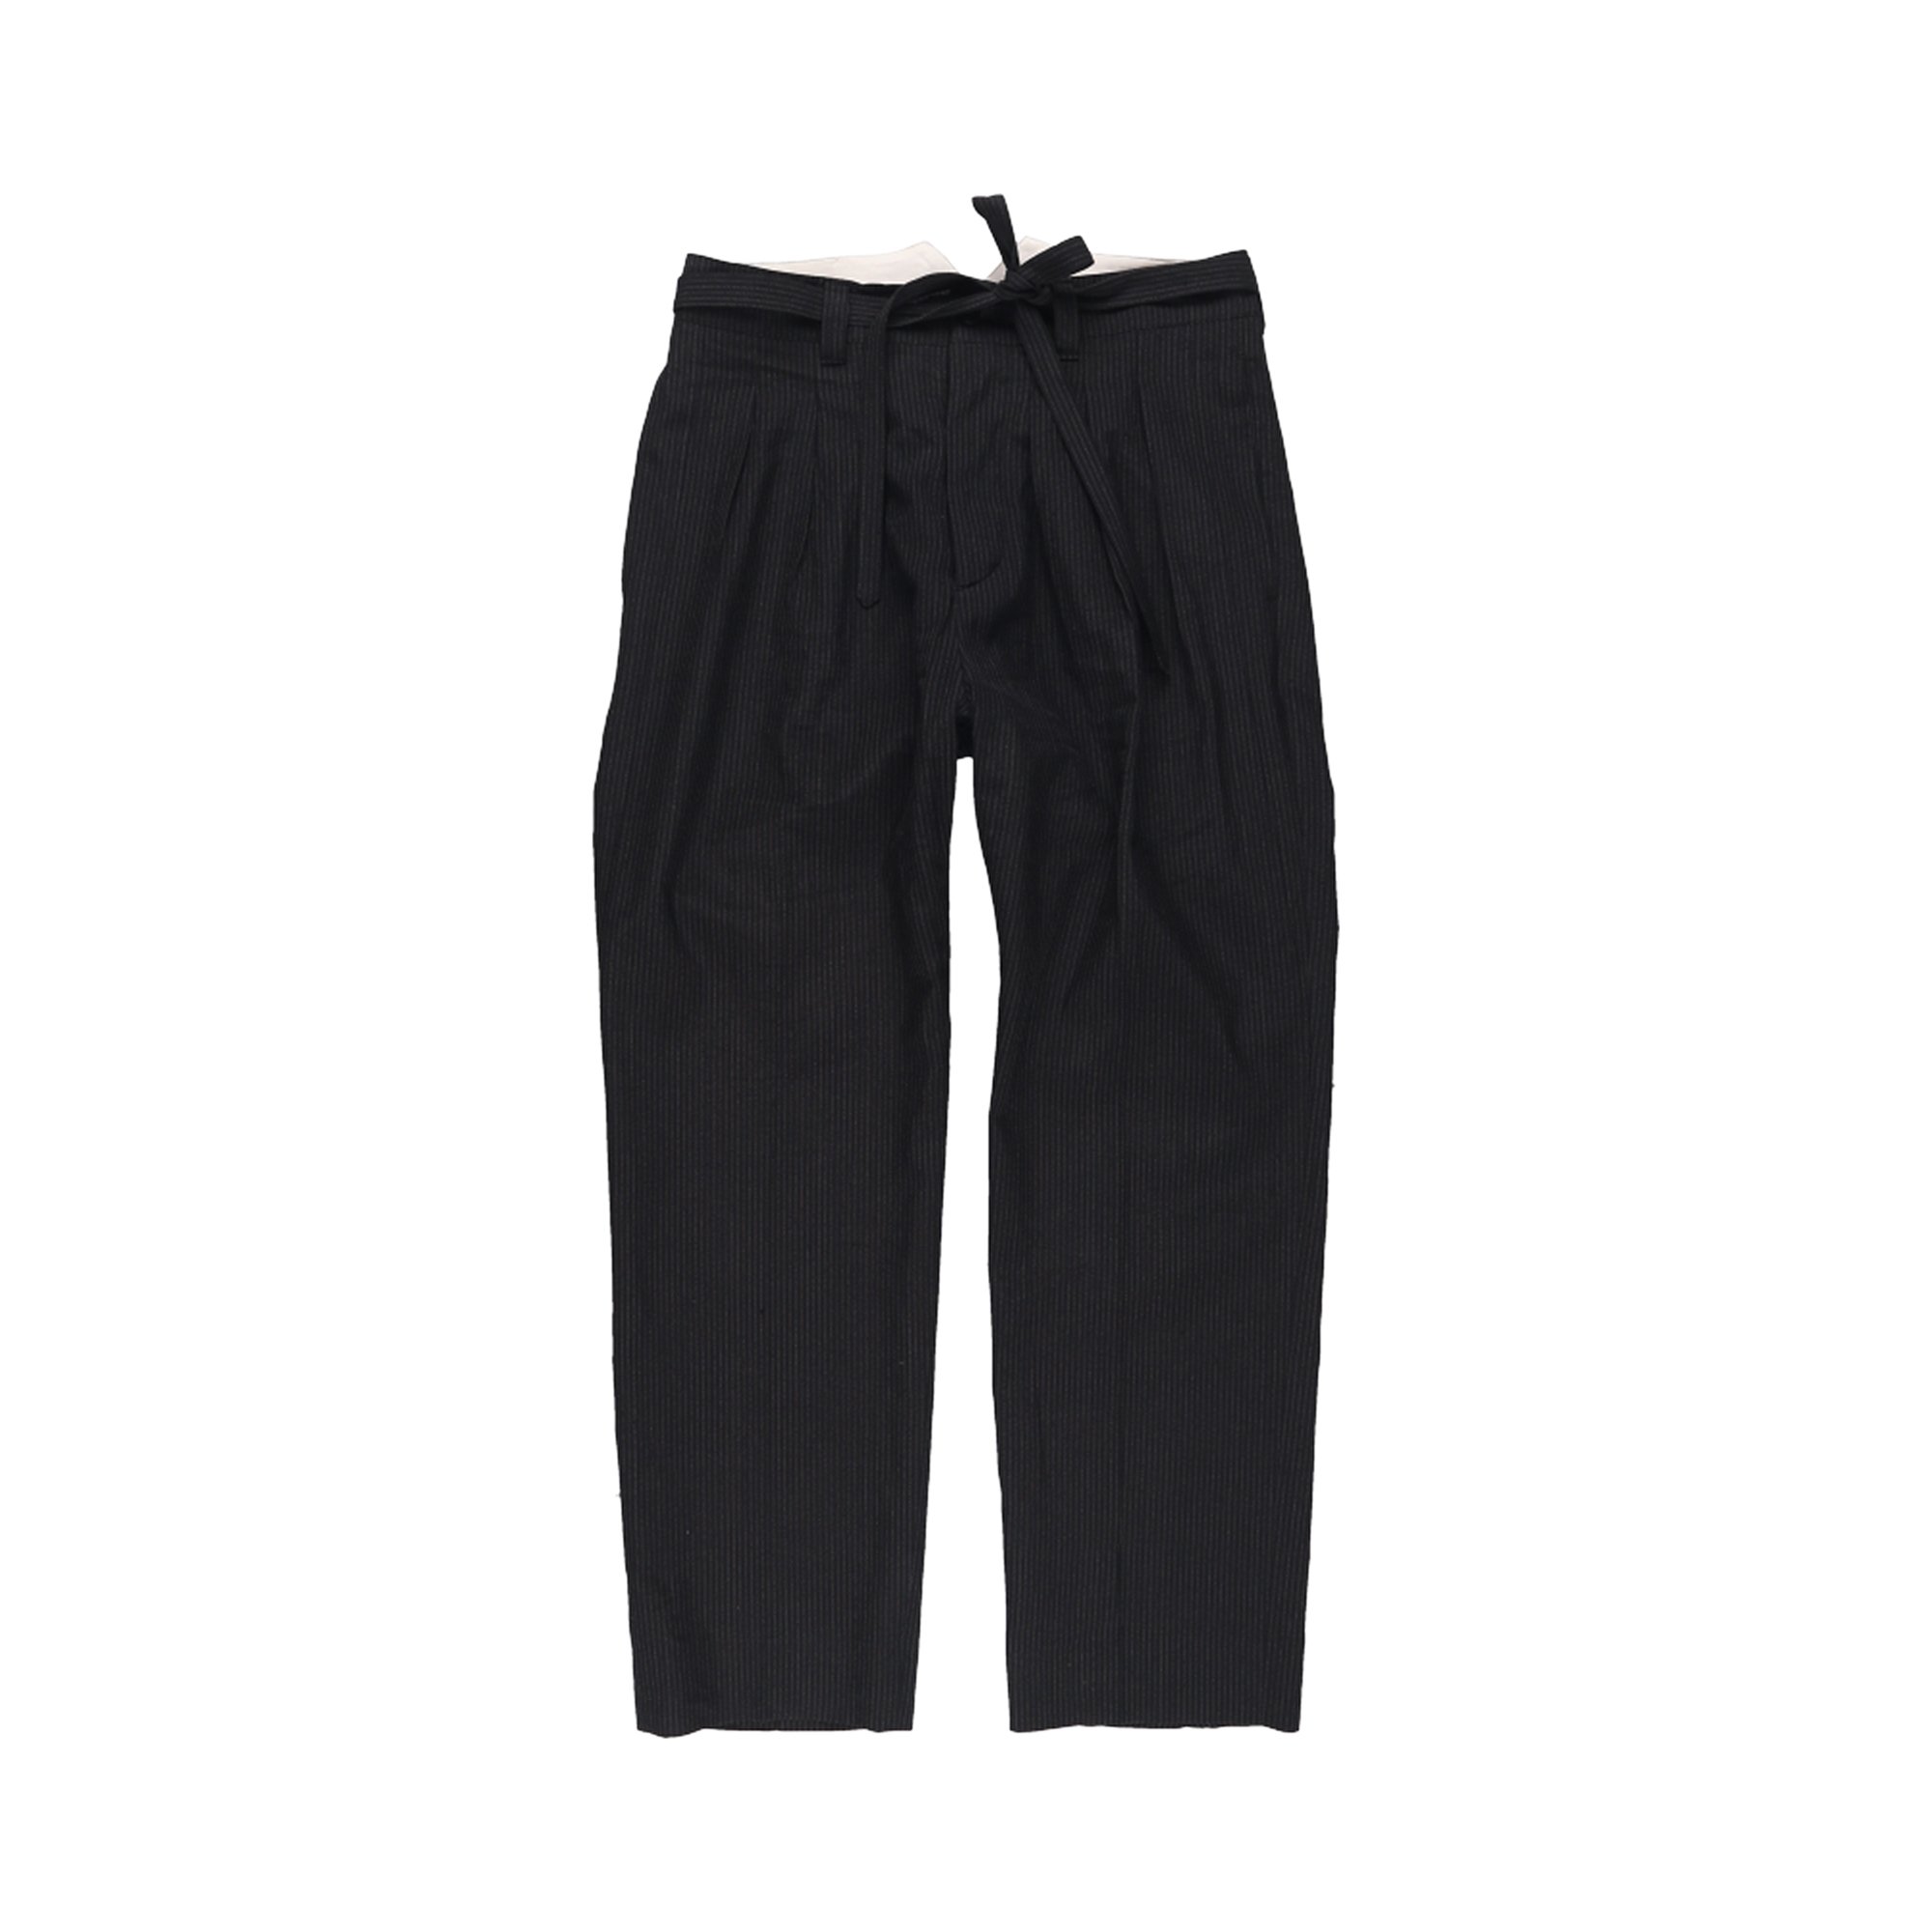 Buy Visvim Hakama Pants Santome 'Black' - 123105008018 BLAC | GOAT